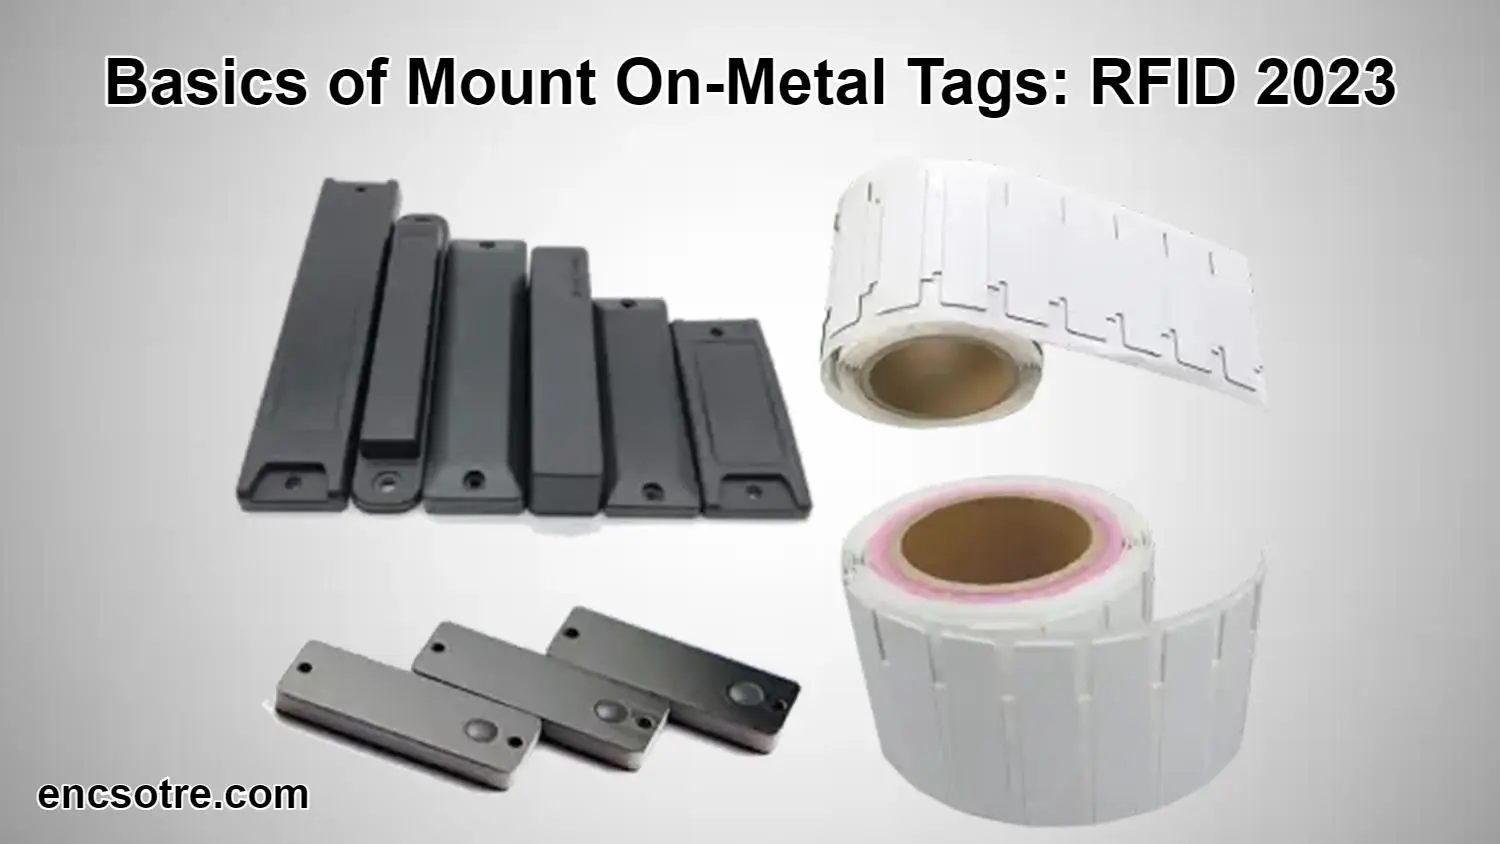 Mount On-Metal Tags